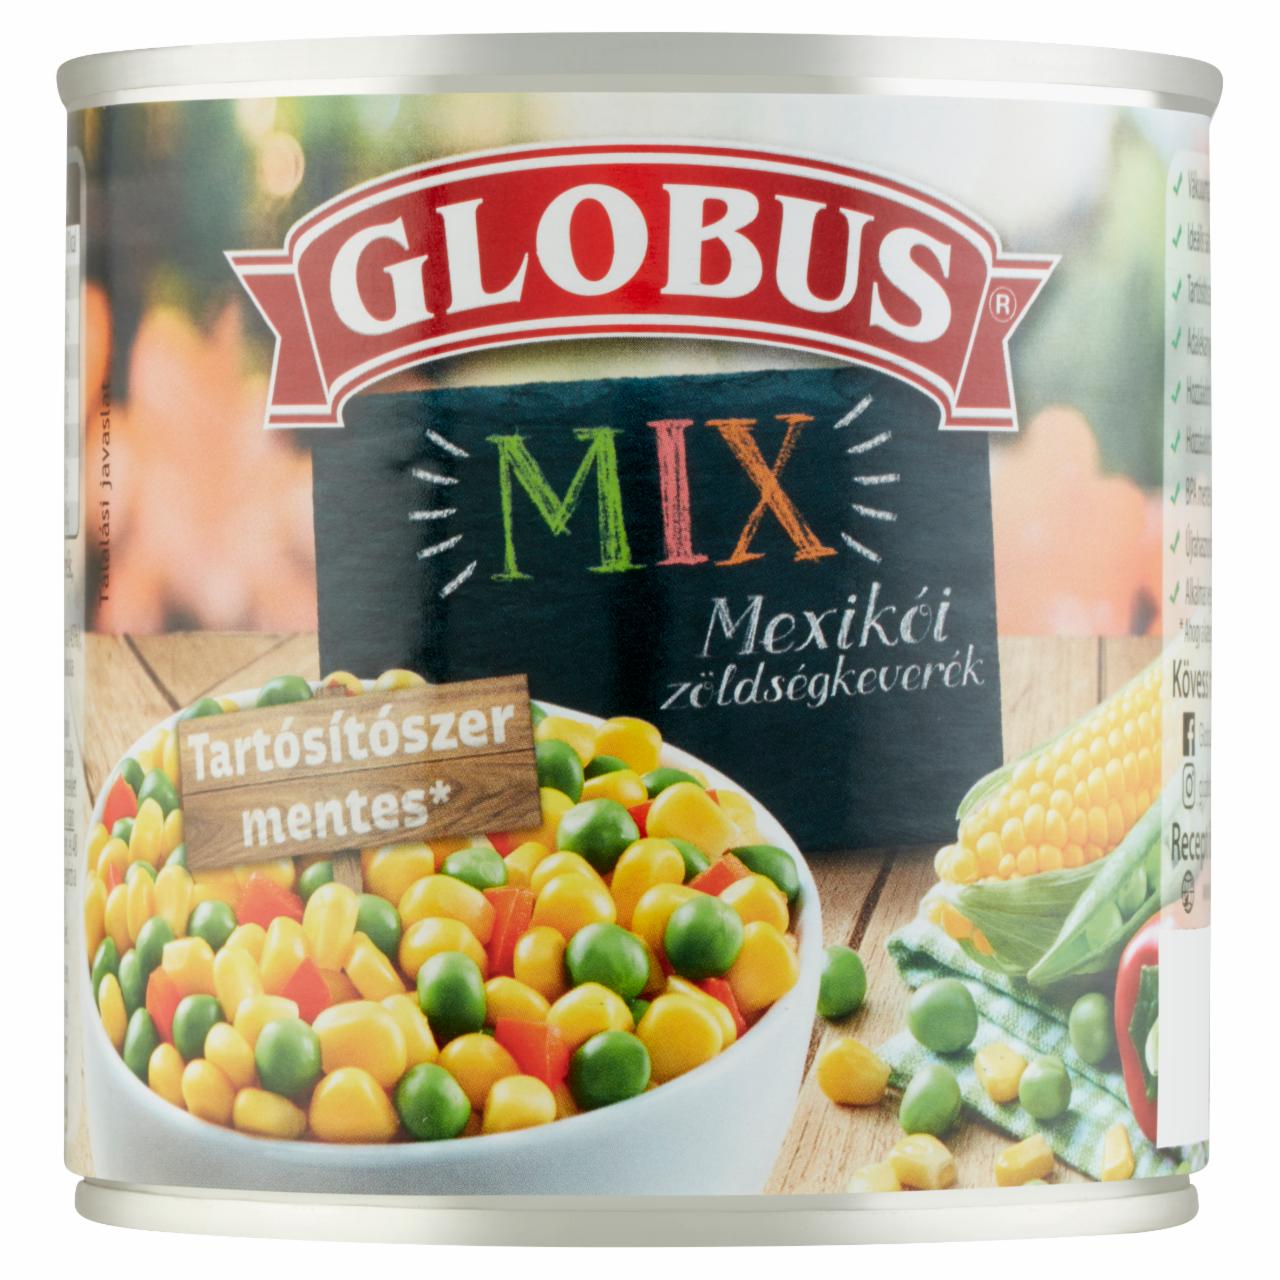 Képek - Globus Mix mexikói zöldségkeverék 300 g